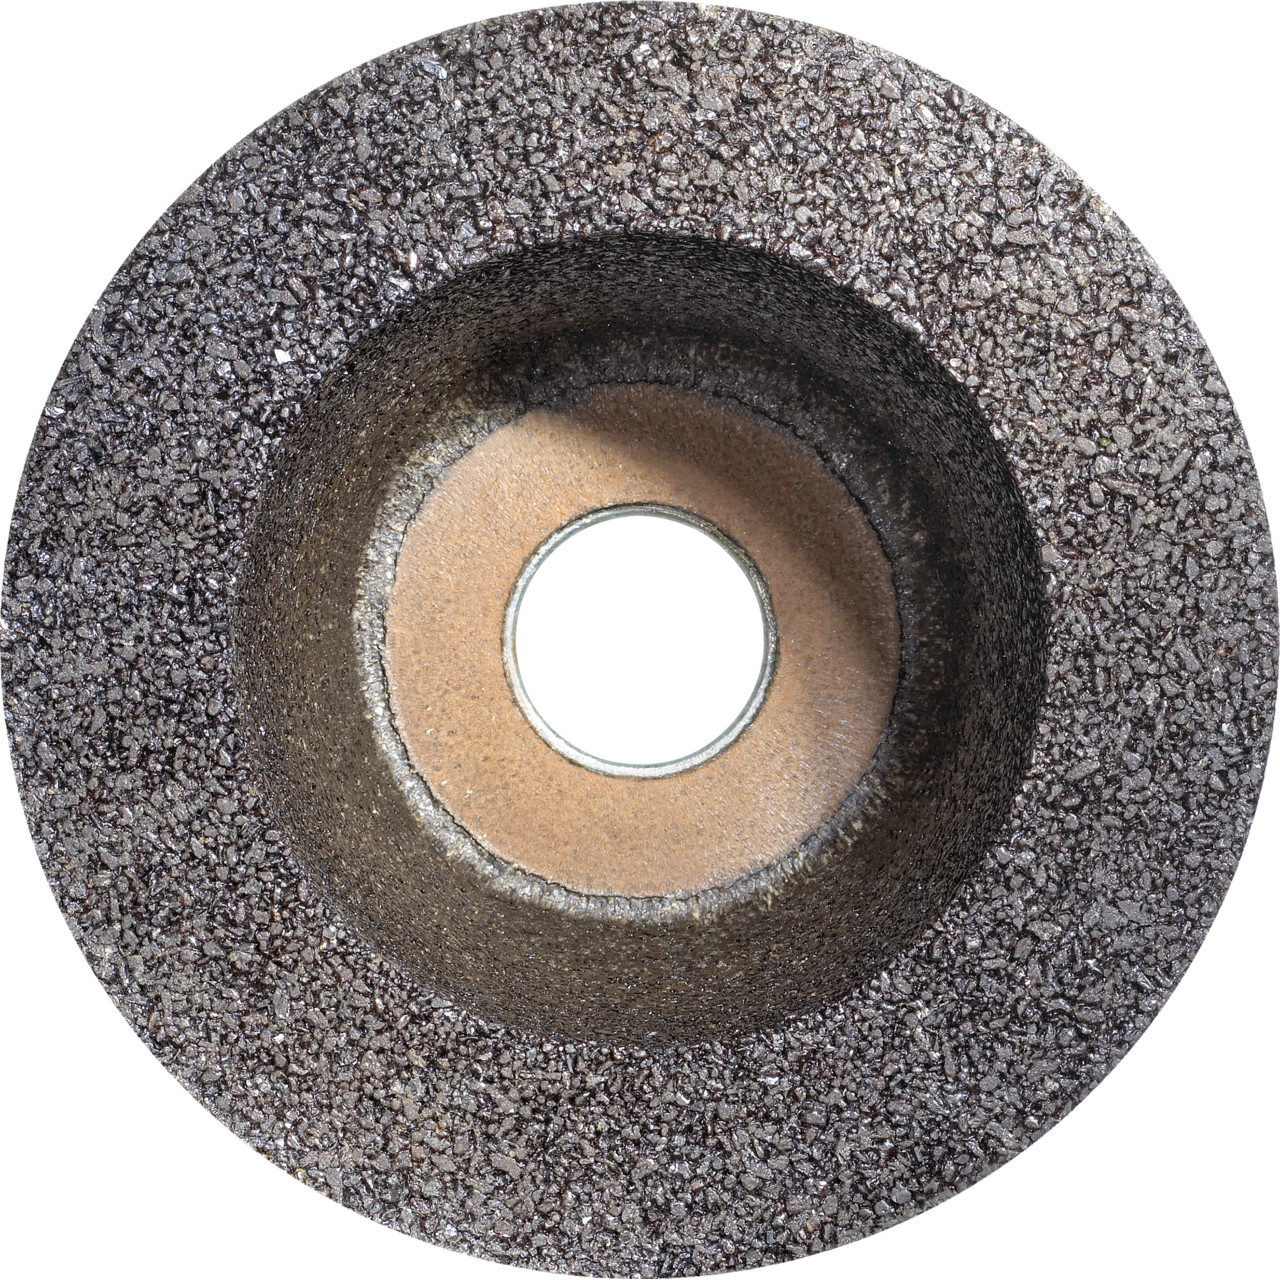 Tyrolit Tazza in resina D/JxTxGE 110/90x55xM14 Per pietra, forma: 11ZB ruota a tazza, Art. 310992